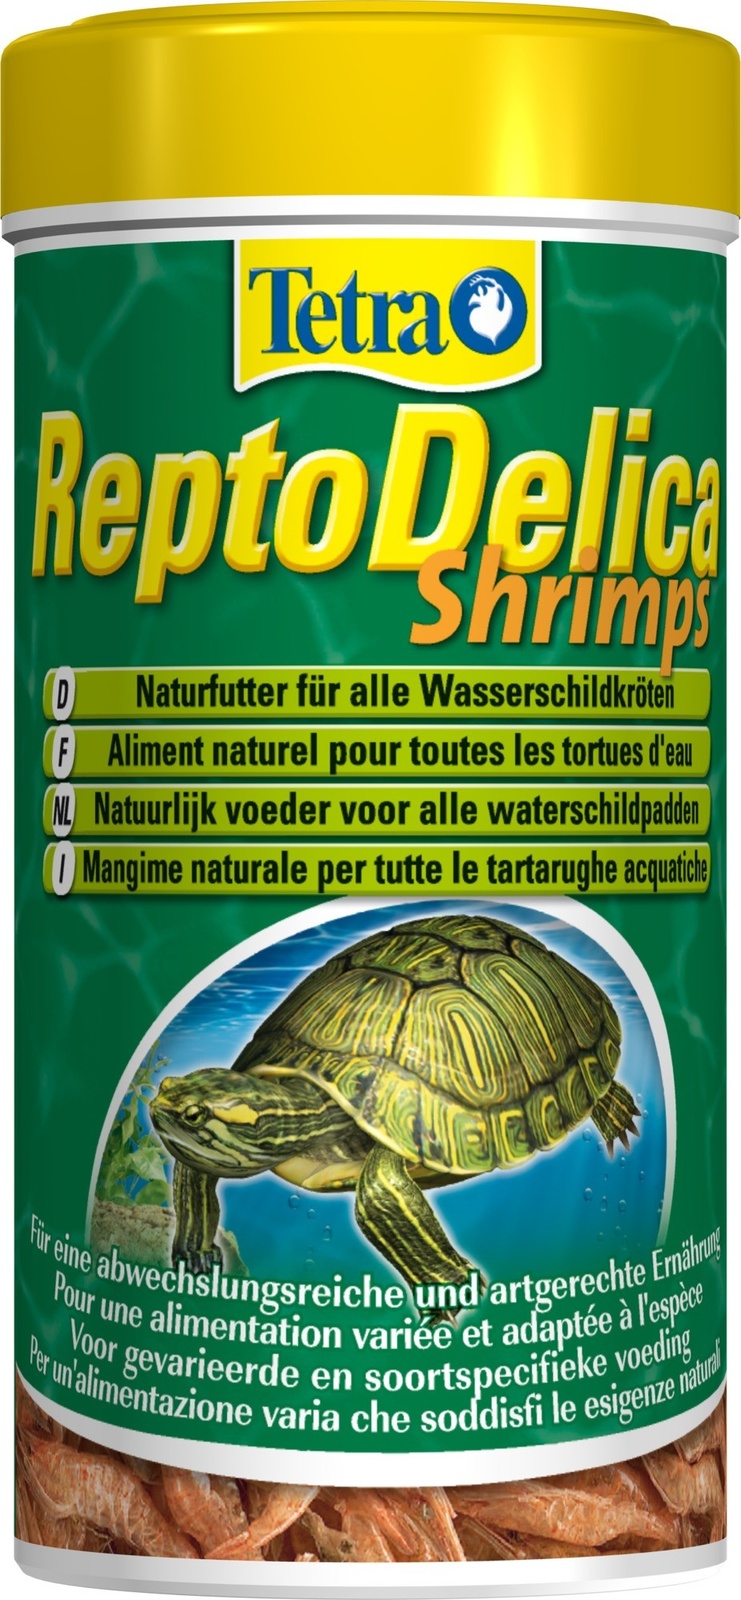 tetra корма tetra корма корм для водных черепах гаммарус 25 г Tetra (корма) Tetra (корма) корм для водных черепах. креветки ReptoDelica Shrimps (20 г)